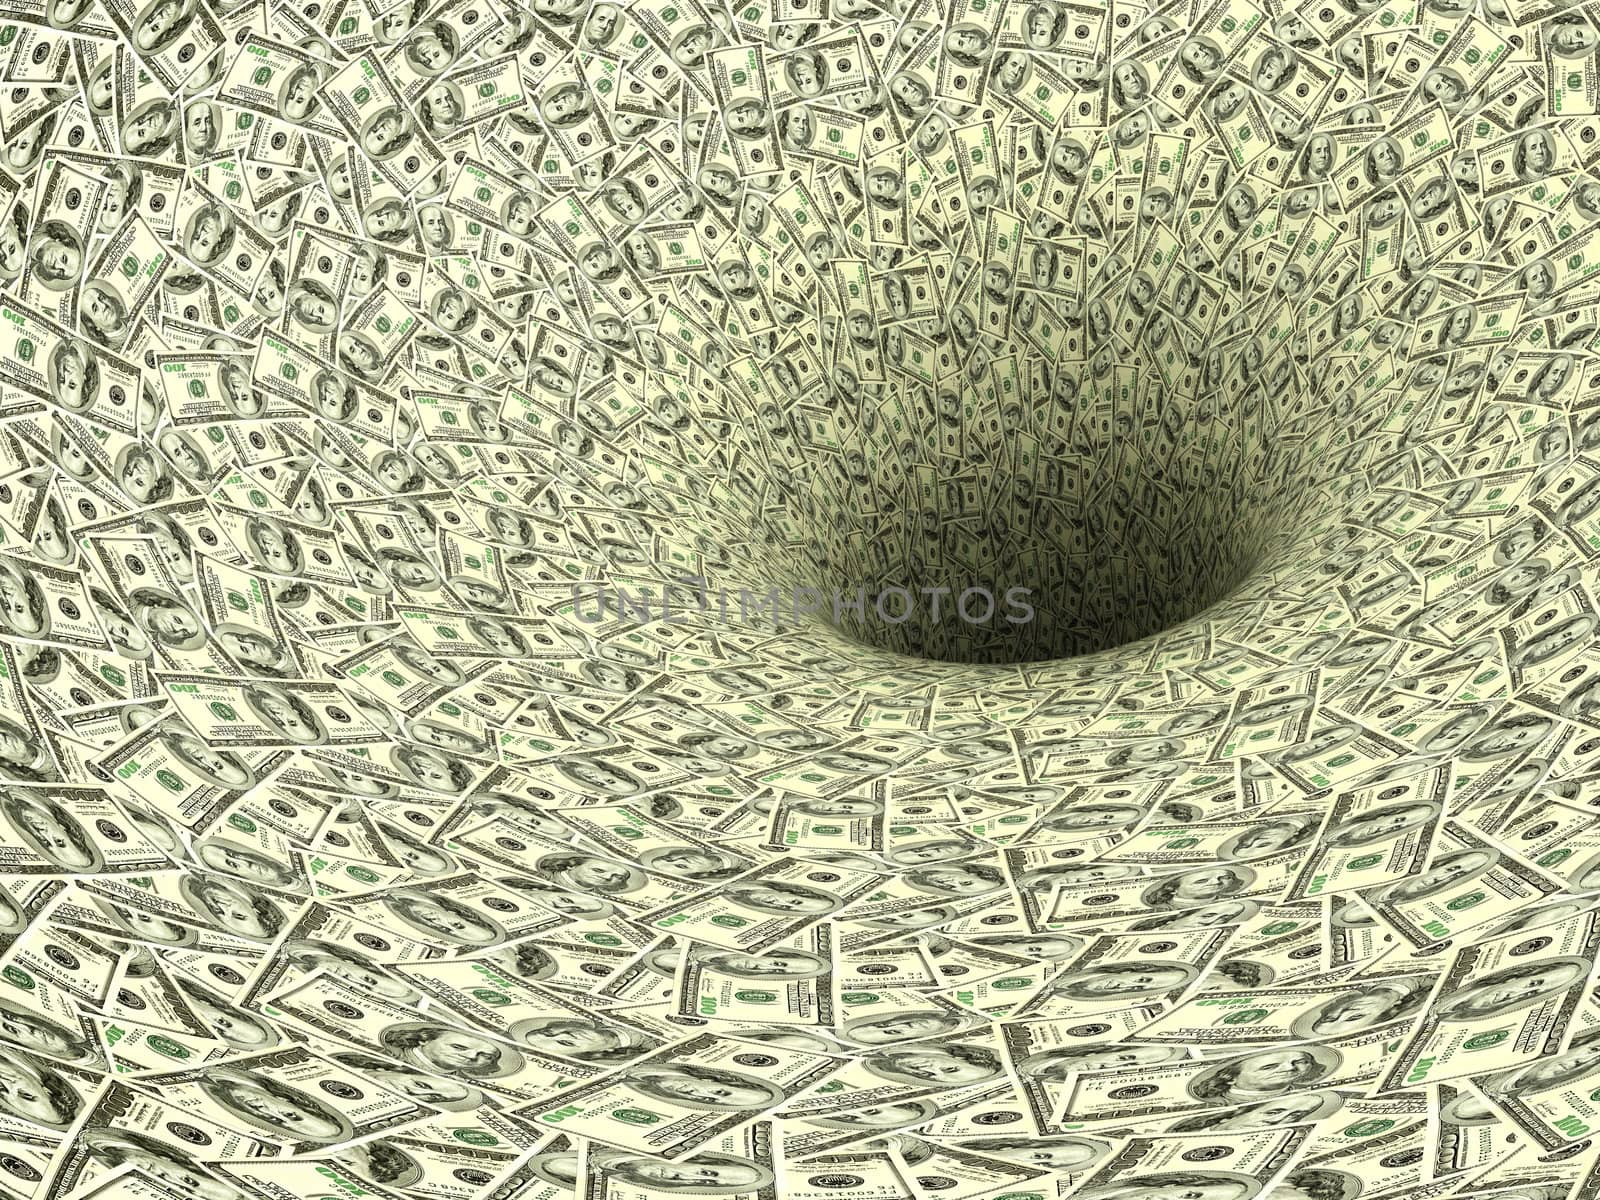 Money vortex by dimol